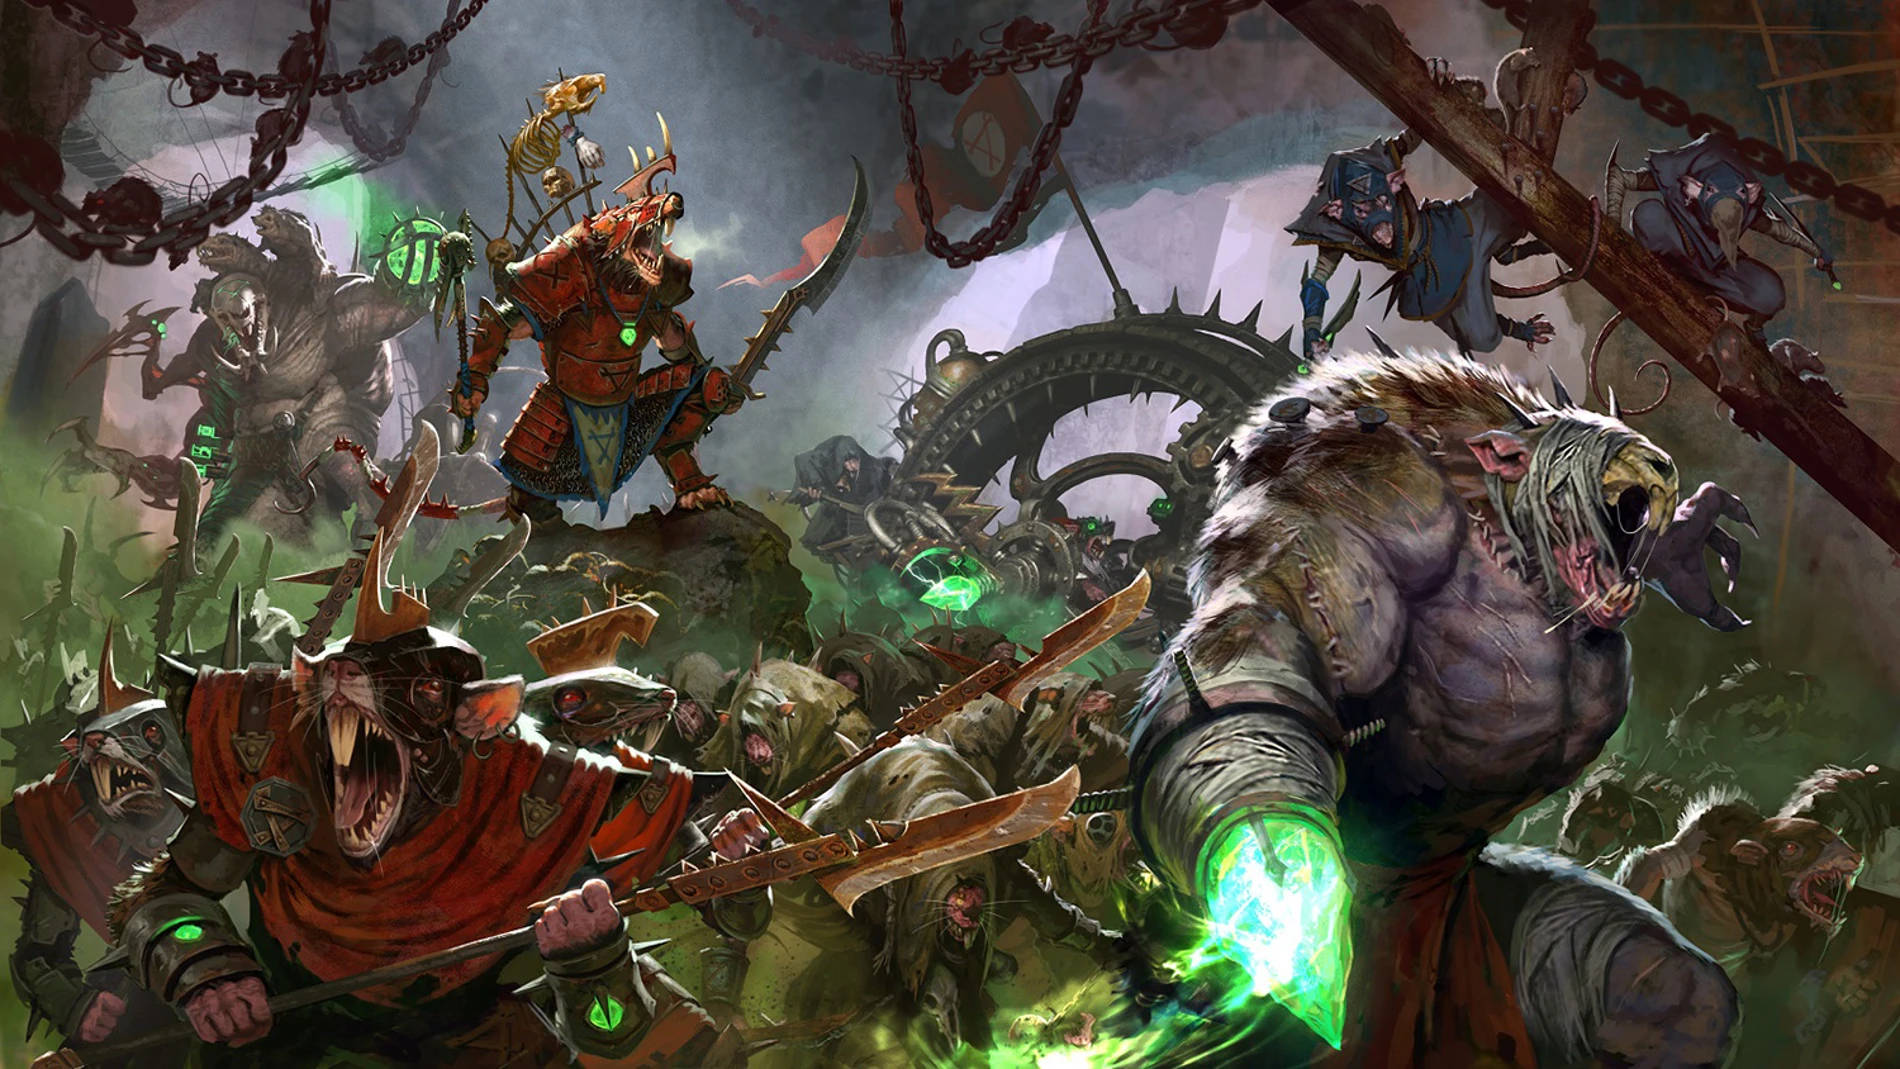 Anunciado El Profeta y el Brujo, más contenido descargable para Total War: Warhammer II